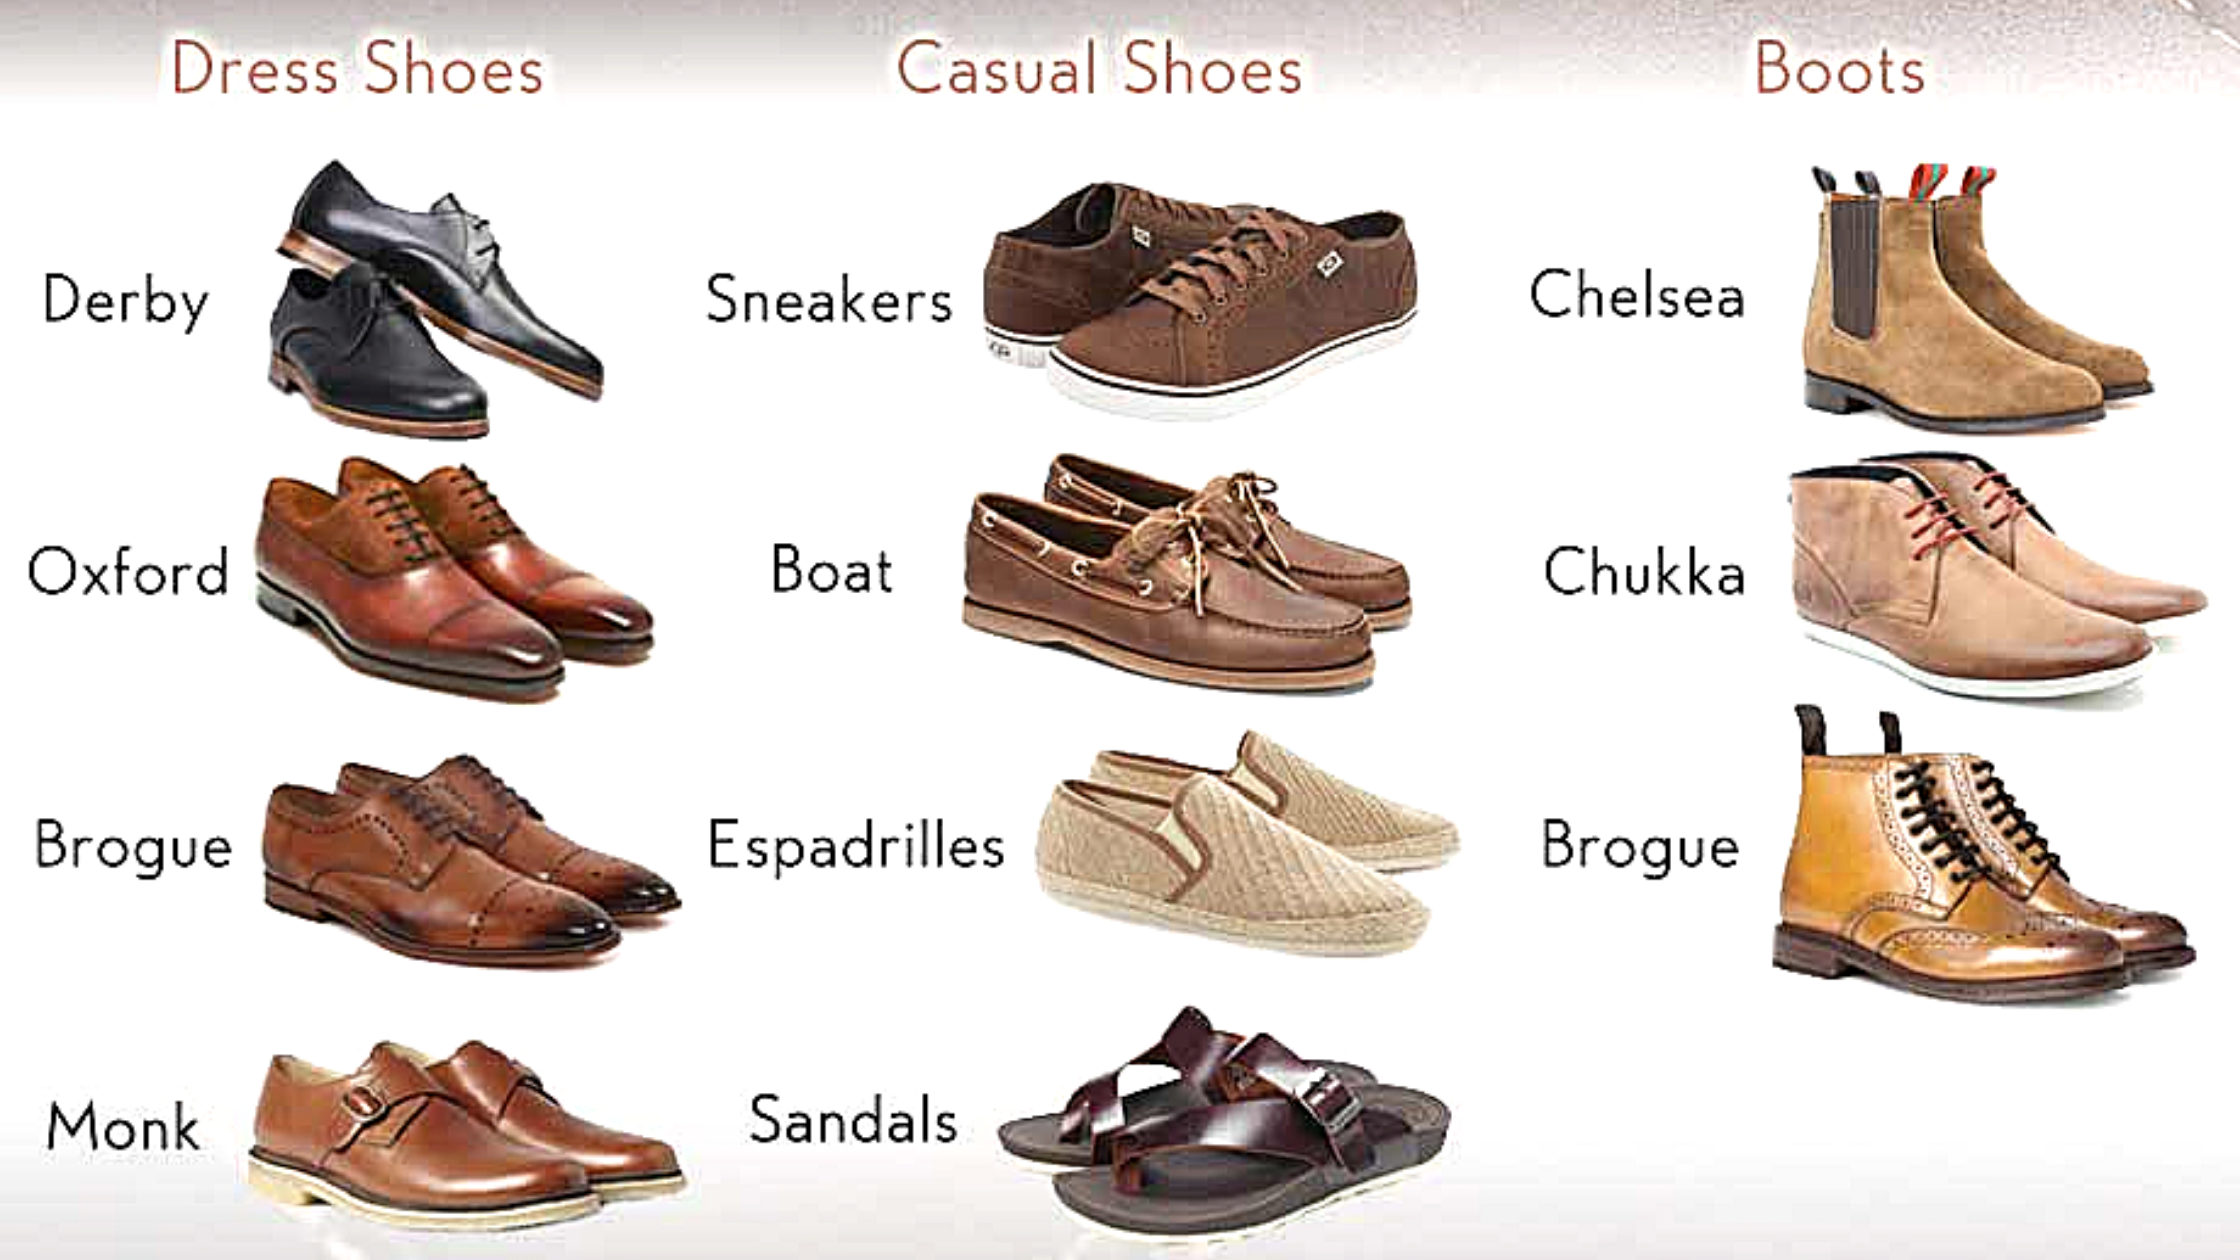 Название мужских ботинок. Название мужской обуви. Мужская обувь названия моделей. Название мужских туфель. Классификация мужских ботинок.